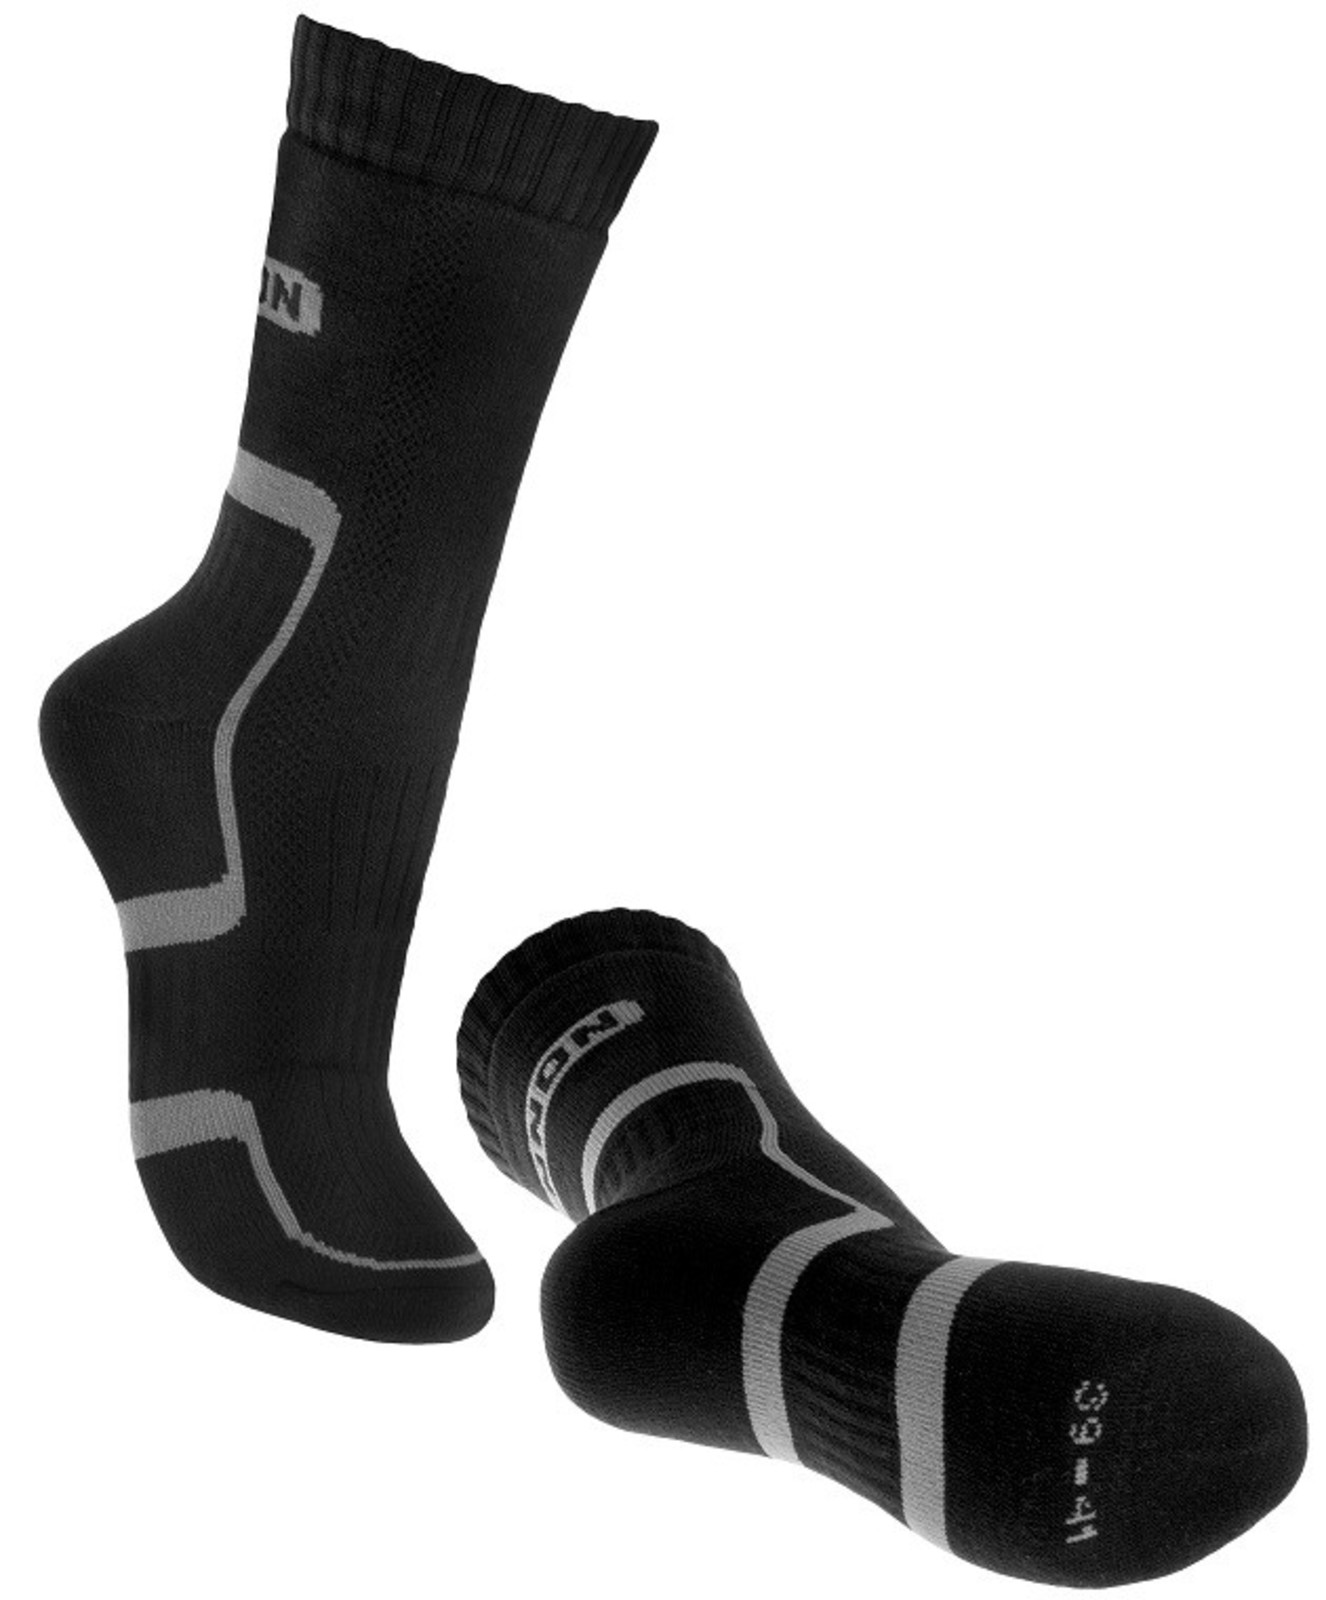 Ponožky Bennon Trek  - veľkosť: 48-49, farba: sivá/čierna